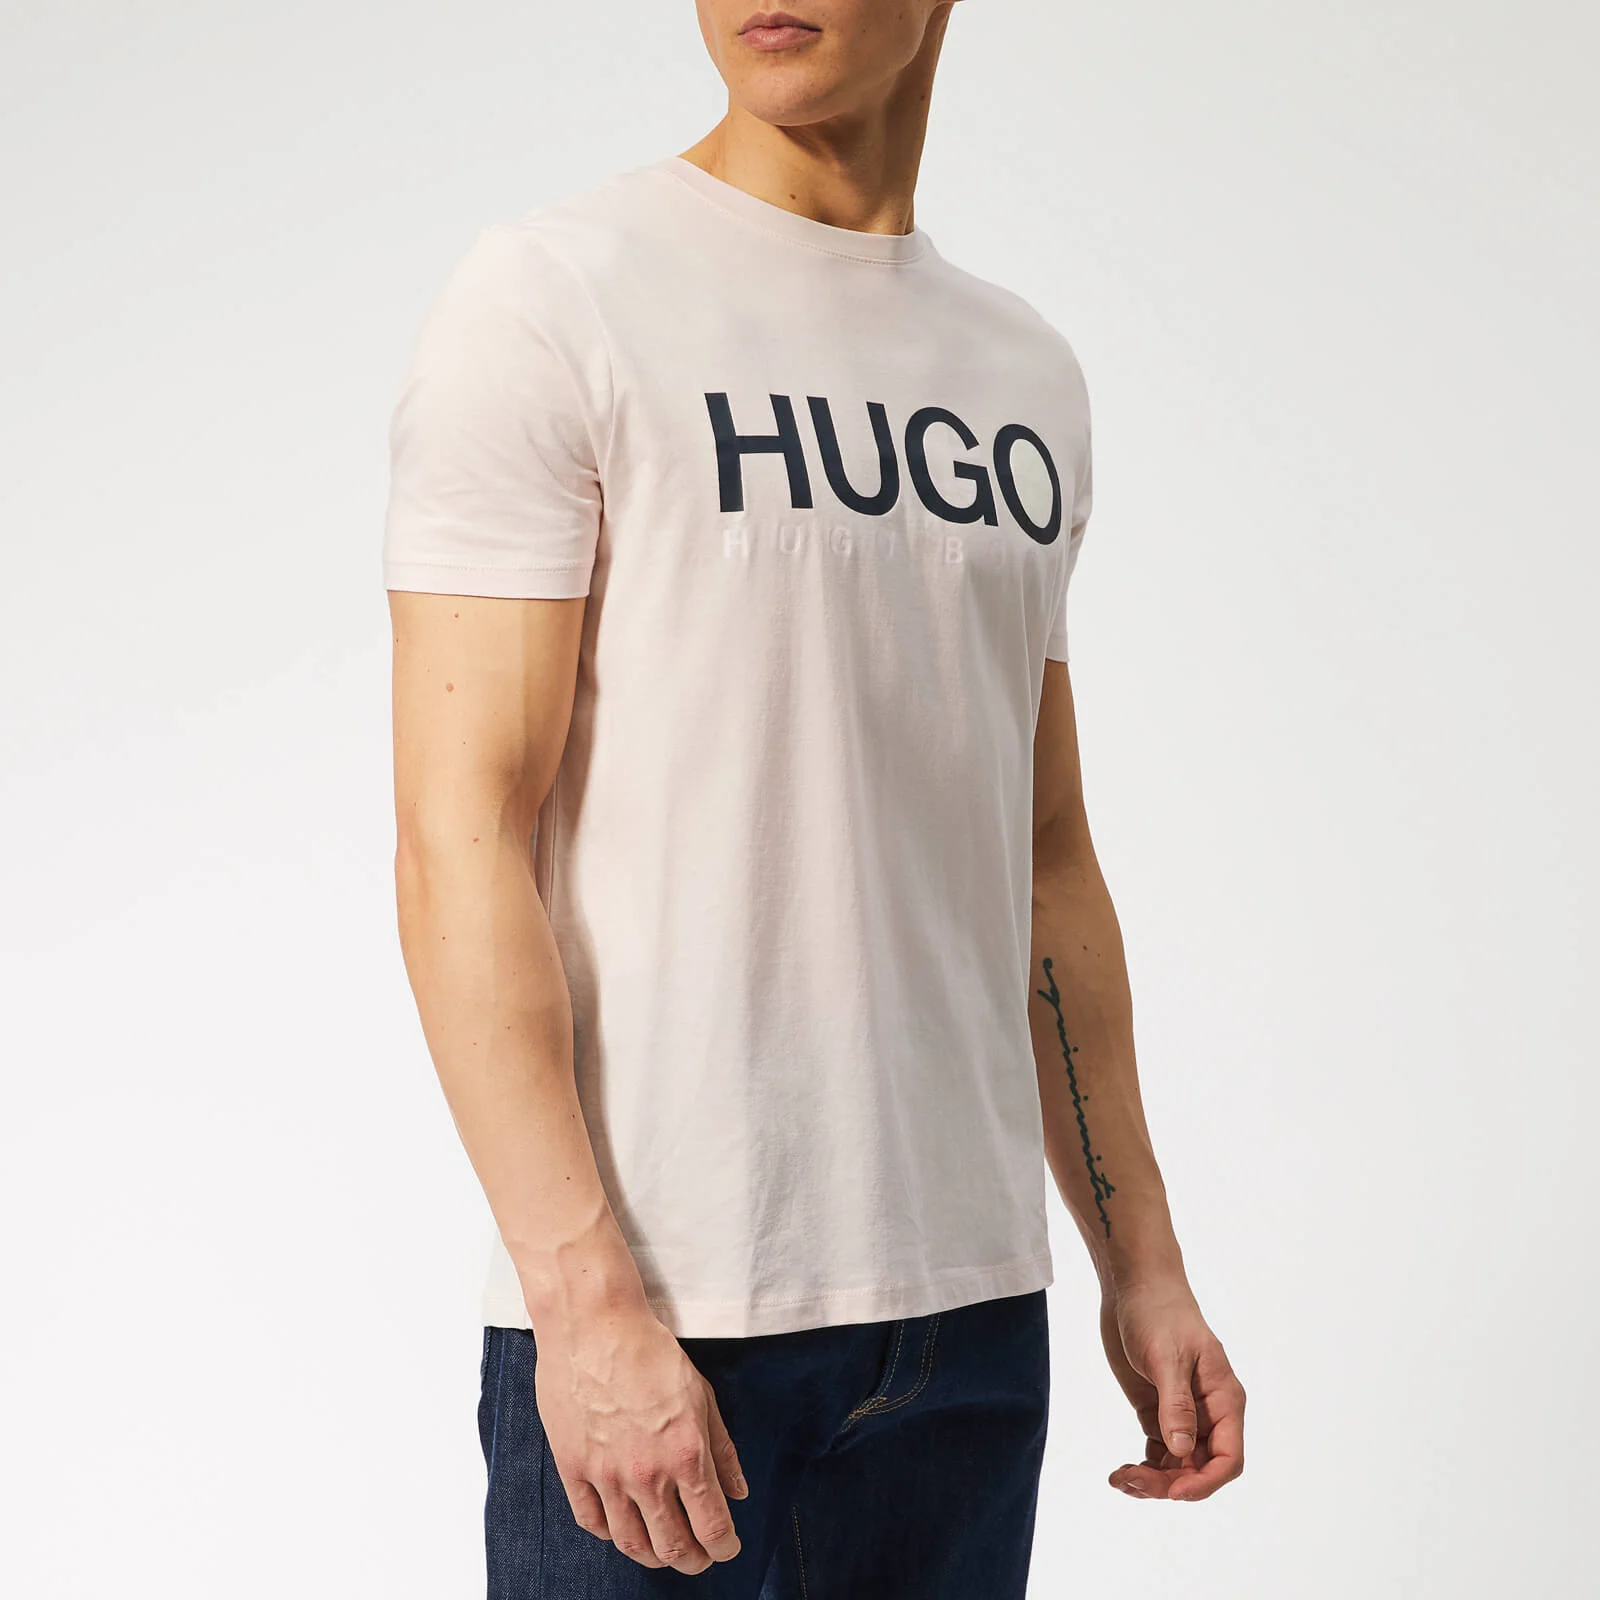 HUGO Men's Dolive T-Shirt - Light/Pastel Pink Image 1